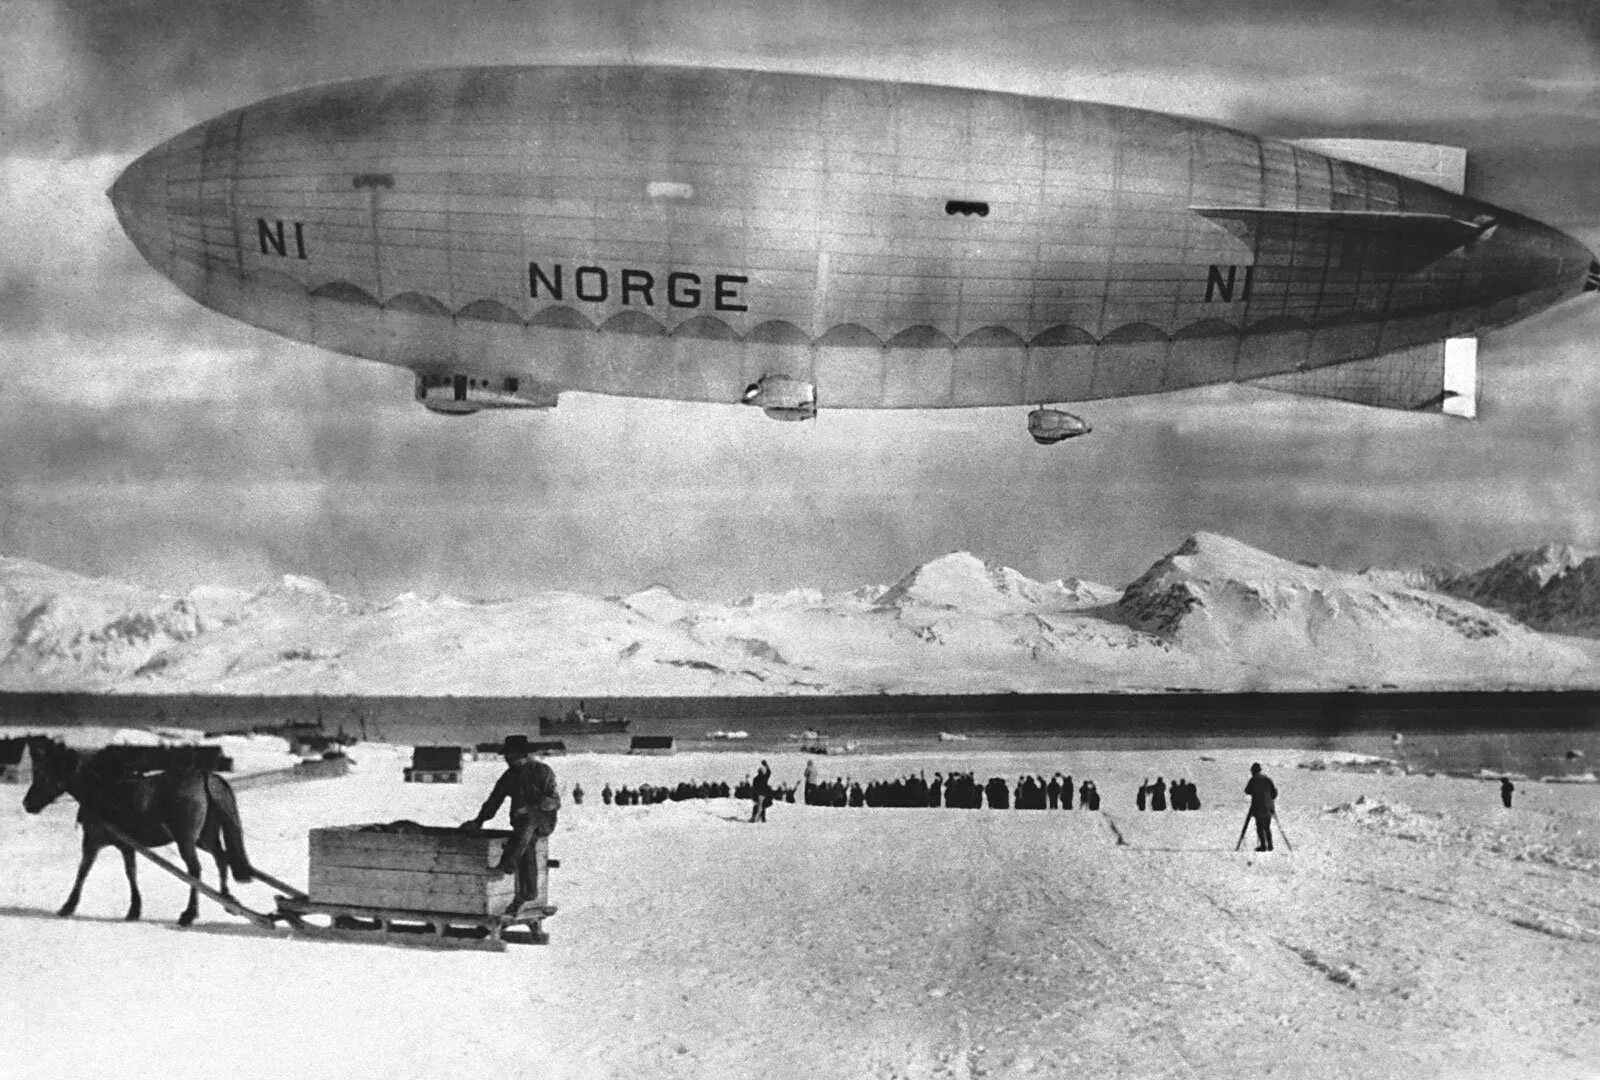 Руаль Амундсен дирижаблю Норвегии. Умберто Нобиле дирижабль Италия. Дирижабль Норвегия Северный полюс 1926. Дирижабль Нобиле "Италия" 1928.